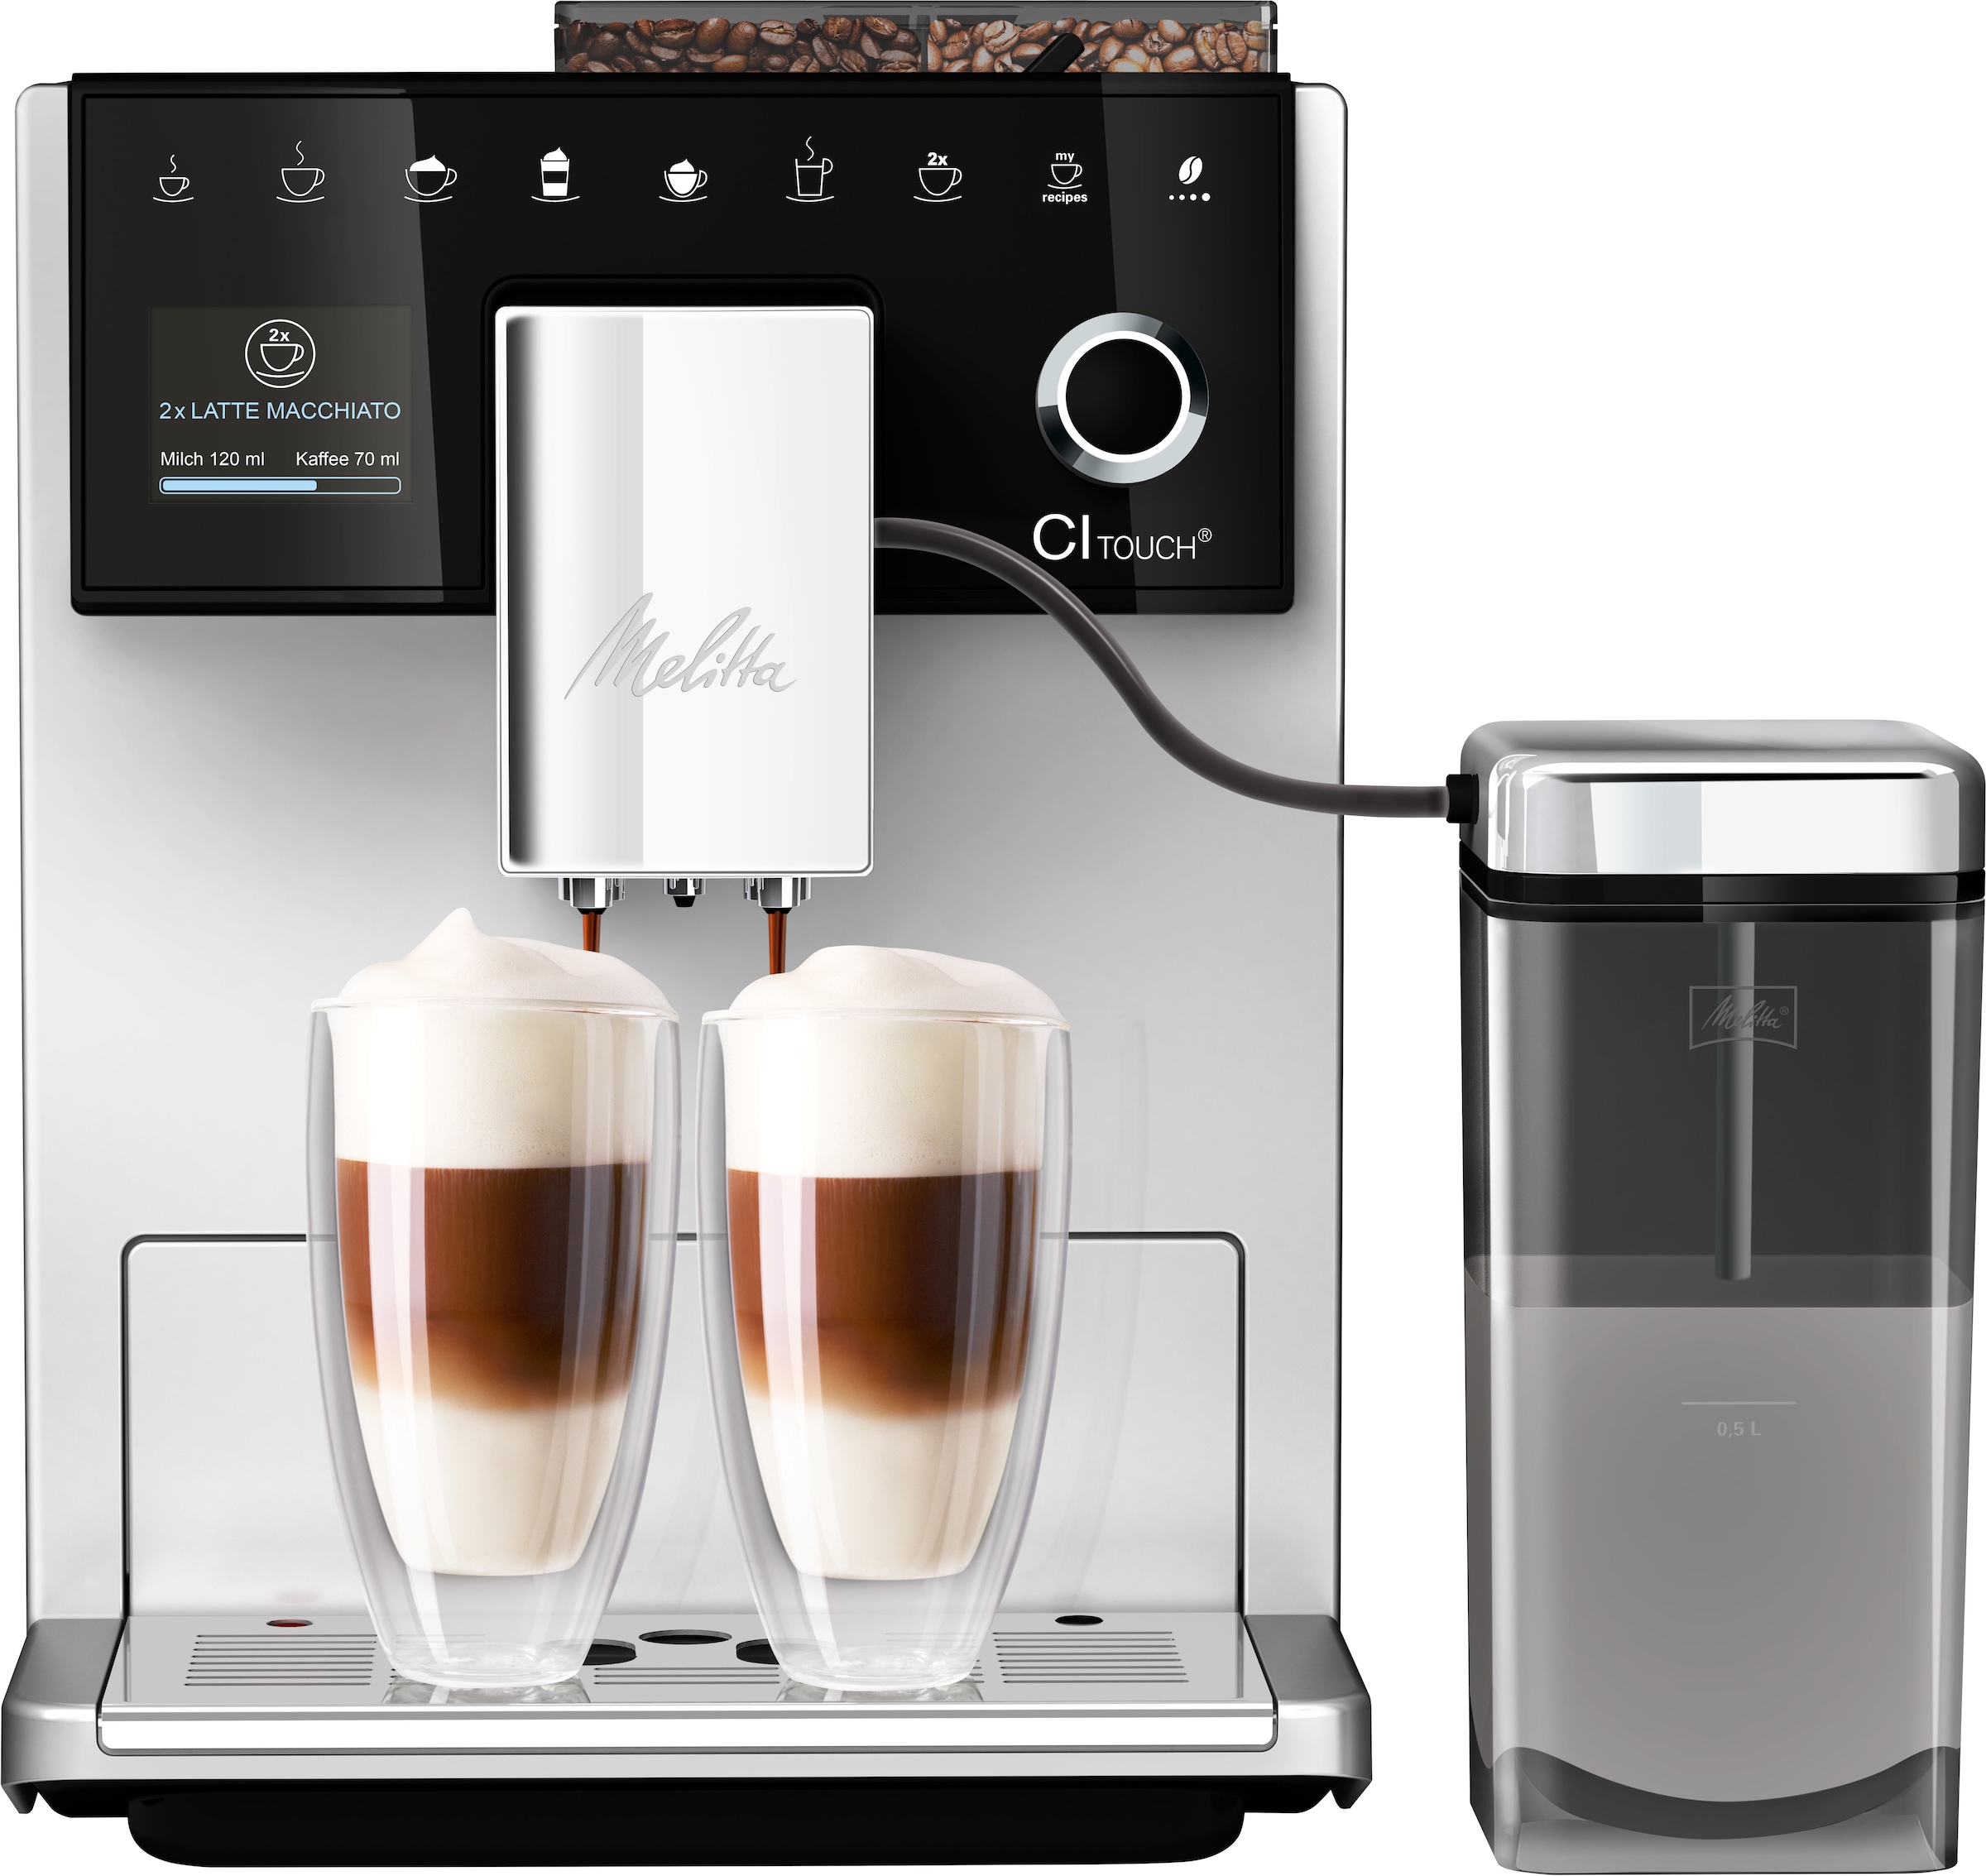 Melitta Kaffeevollautomat »CI Touch® F630-111«, silber, 10 Kaffeerezepte, 2-Kammern-Bohnenbehäl., One Touch Bedienung